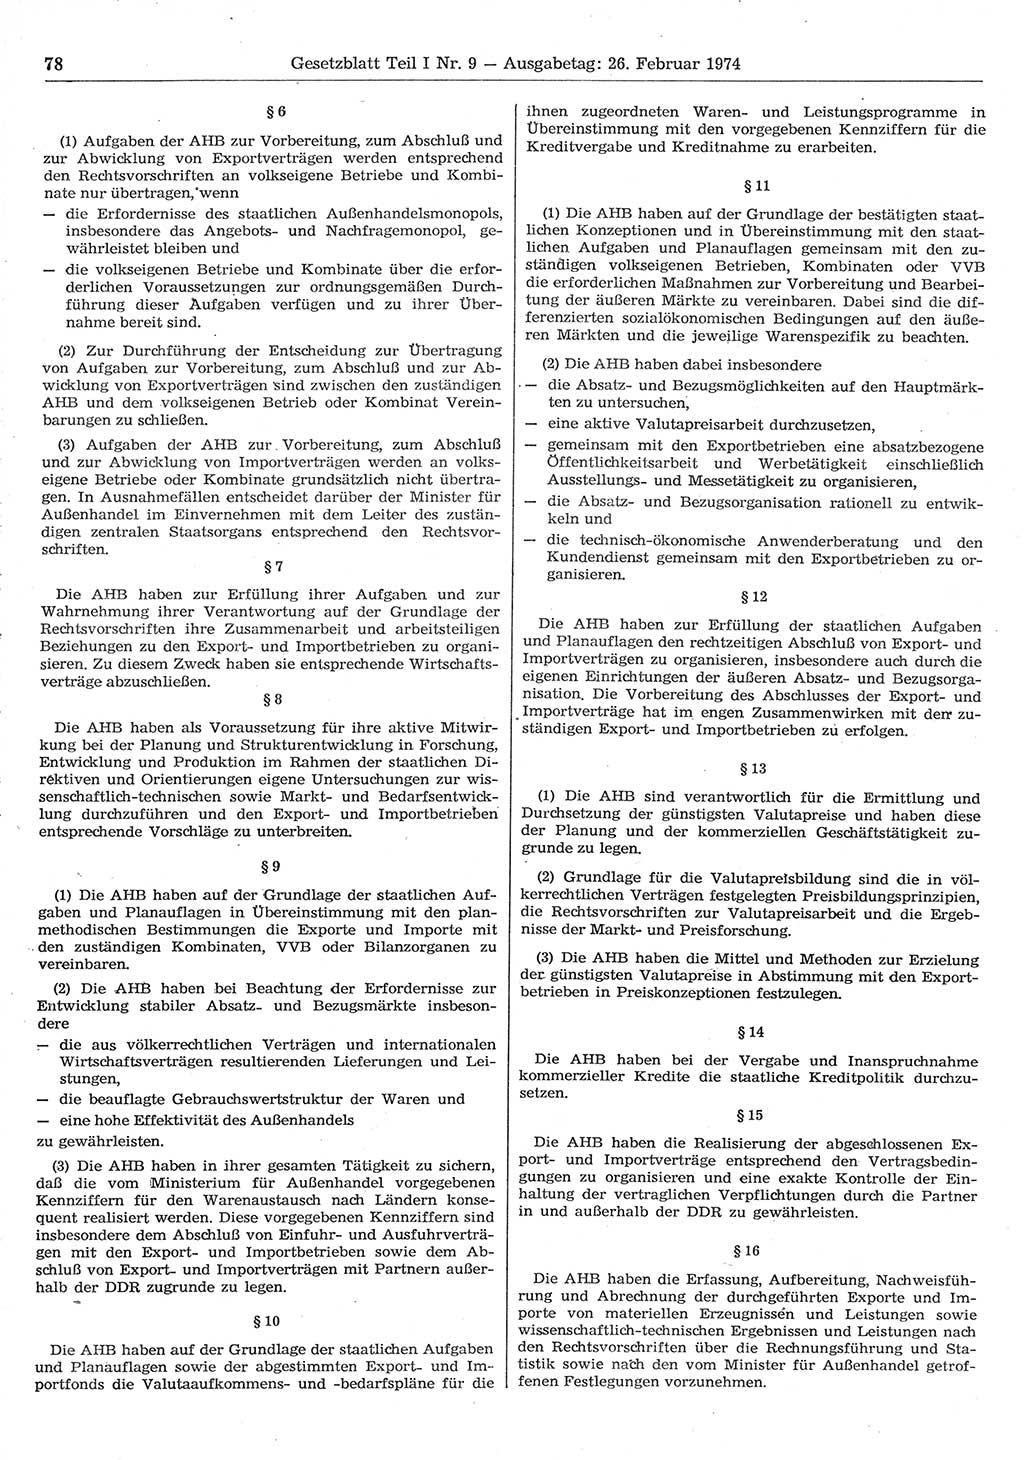 Gesetzblatt (GBl.) der Deutschen Demokratischen Republik (DDR) Teil Ⅰ 1974, Seite 78 (GBl. DDR Ⅰ 1974, S. 78)